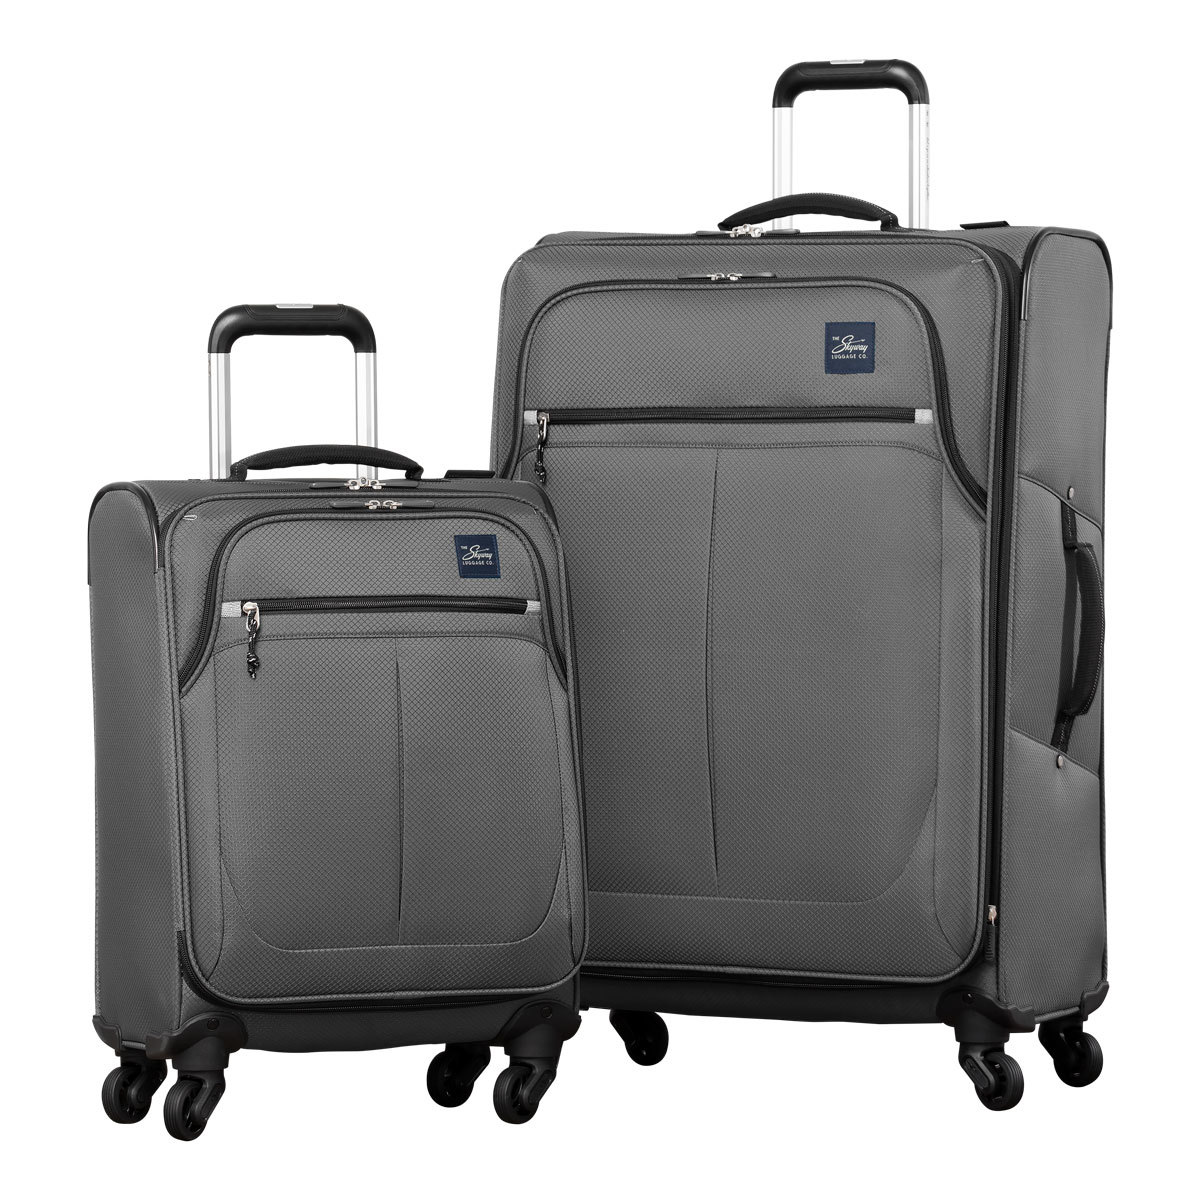 Ricardo Olympic 2 Piece Softside Suitcase Set, Charcoal | Costco UK